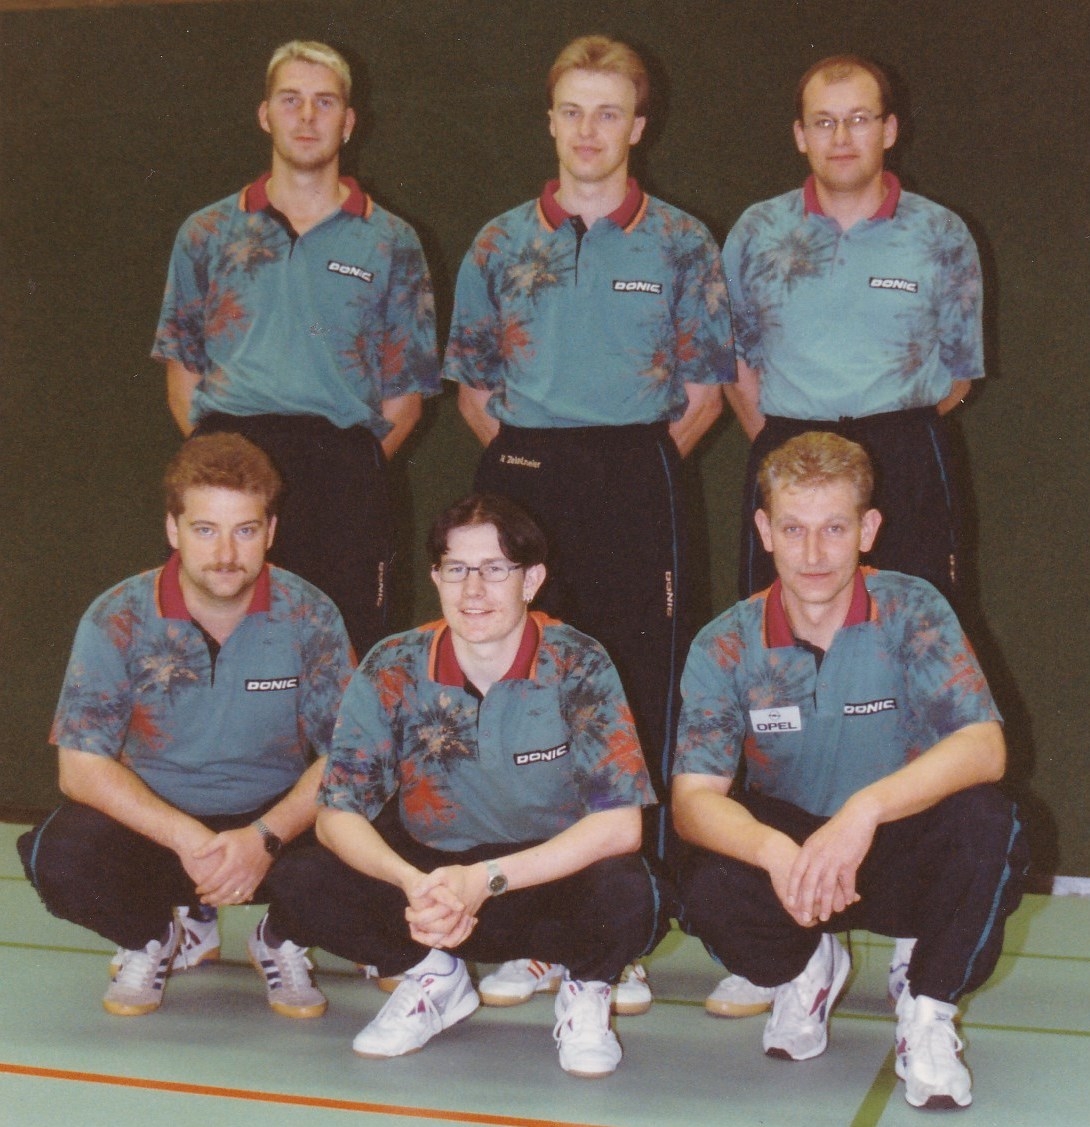 Herren 2 1997/98. hinten von links: T. Lehmann, N. Zeiselmeier, P. Ermisch; vorne von links: A. Wehrmann, M. Schmider, M. Wrobel